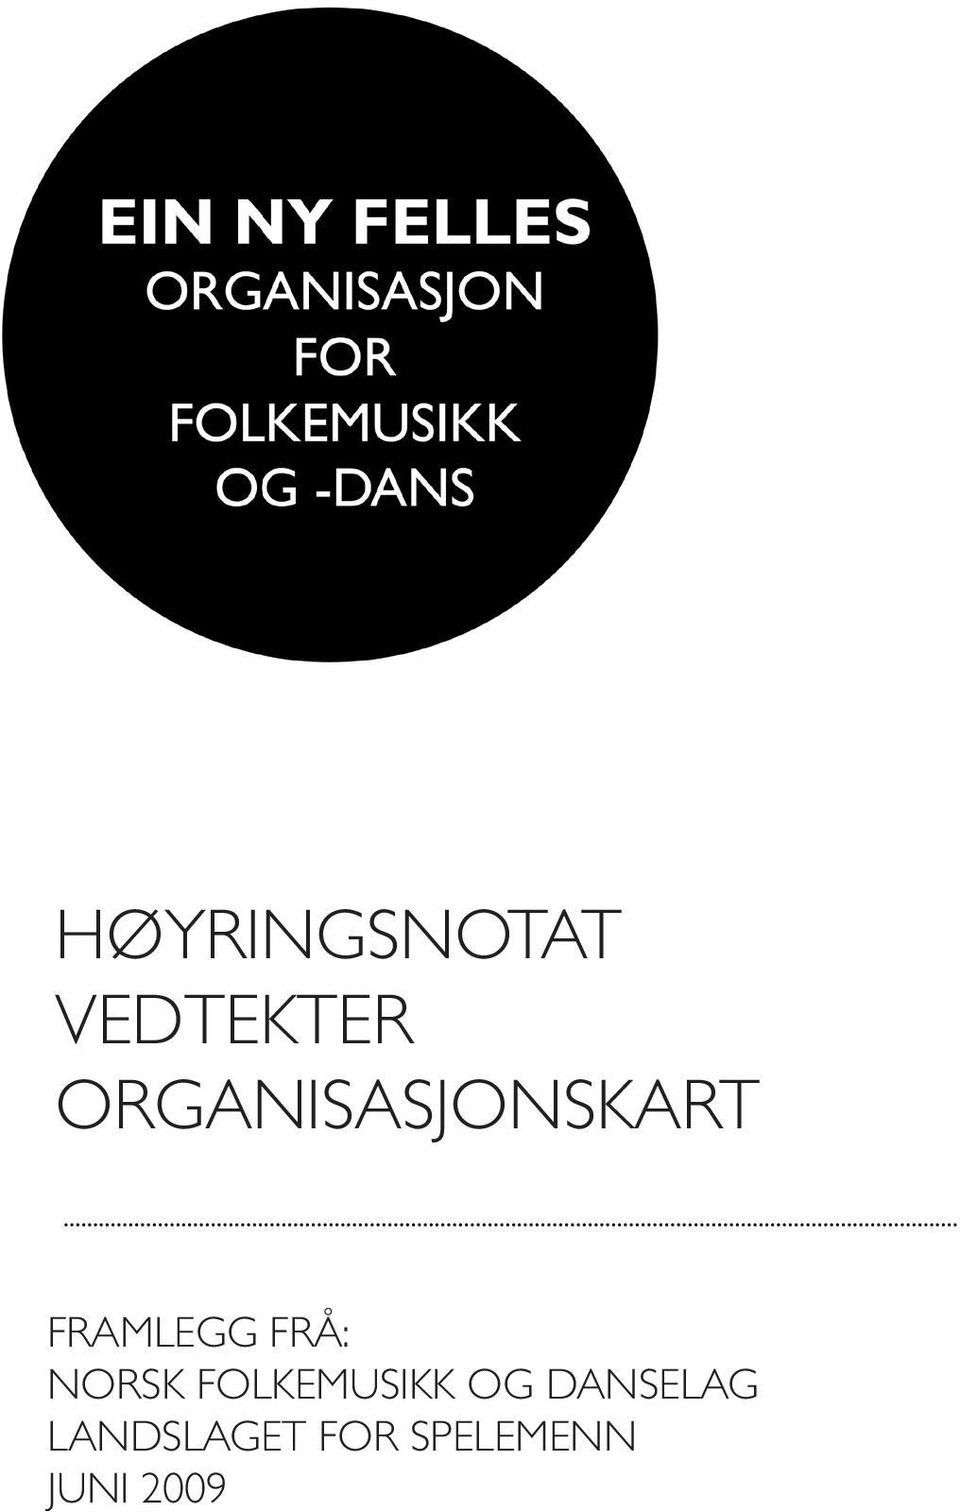 FRÅ: Norsk Folkemusikk og